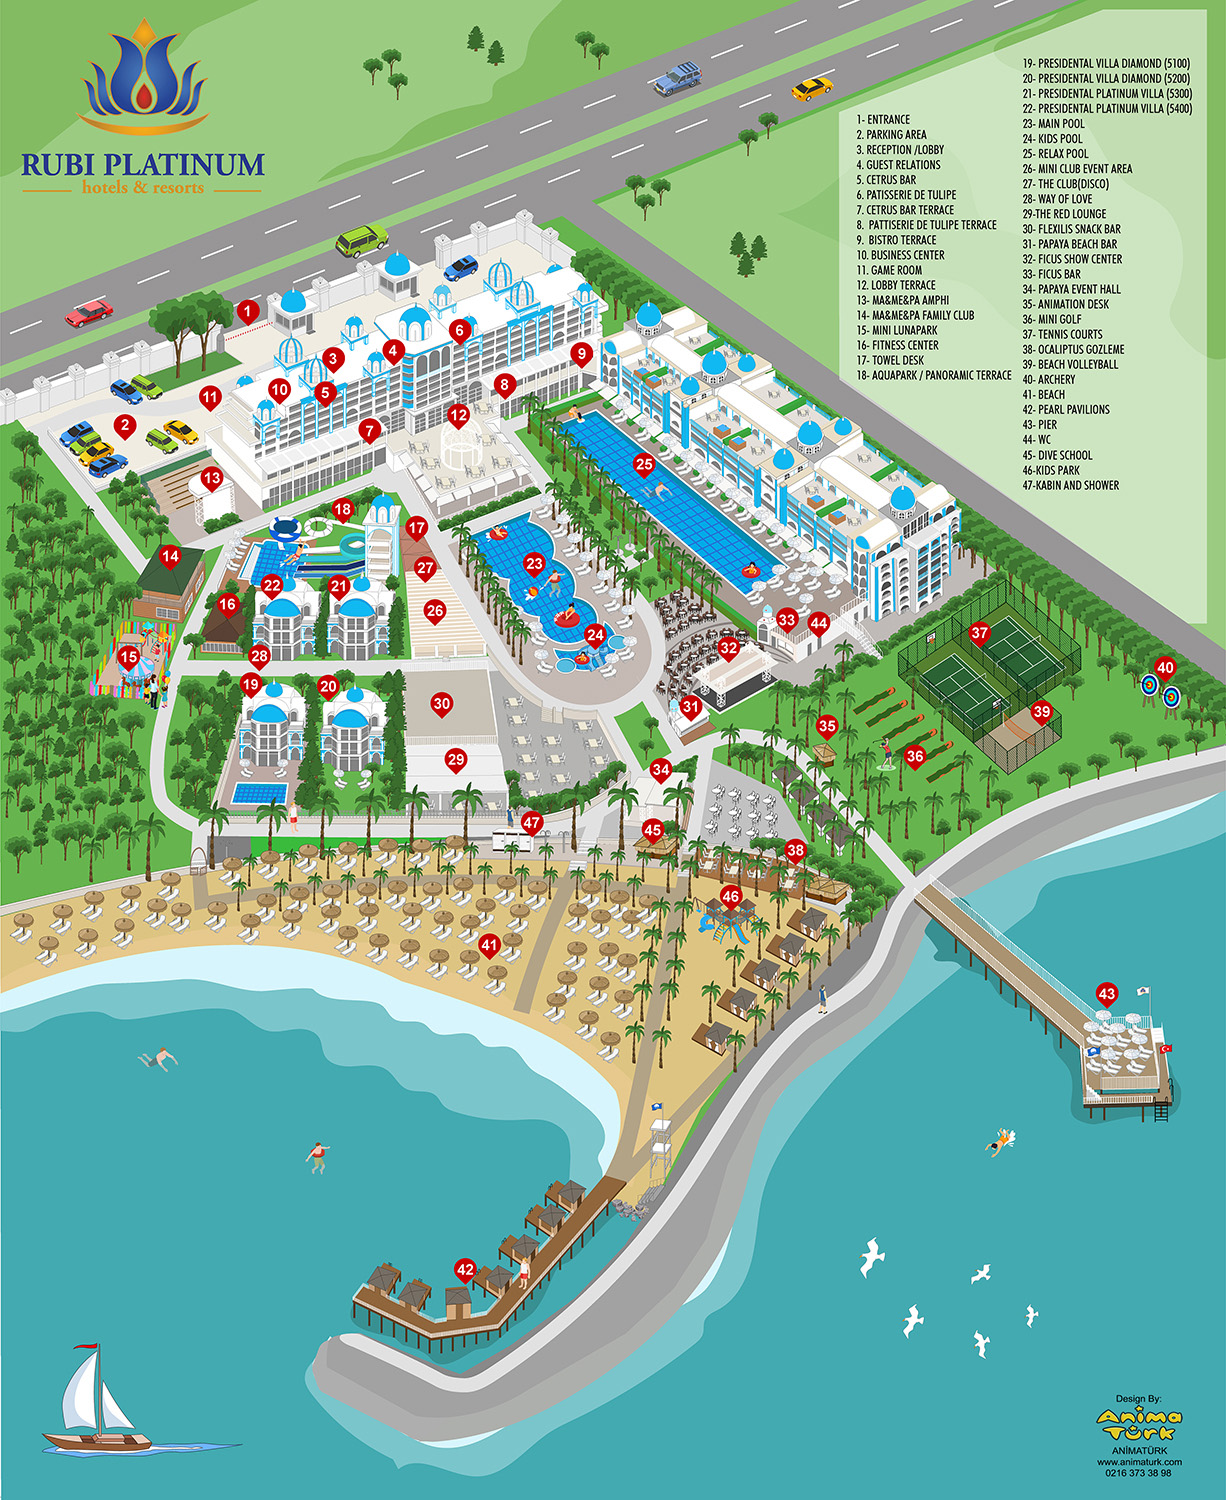 Rubi Platinum Spa Resort Map